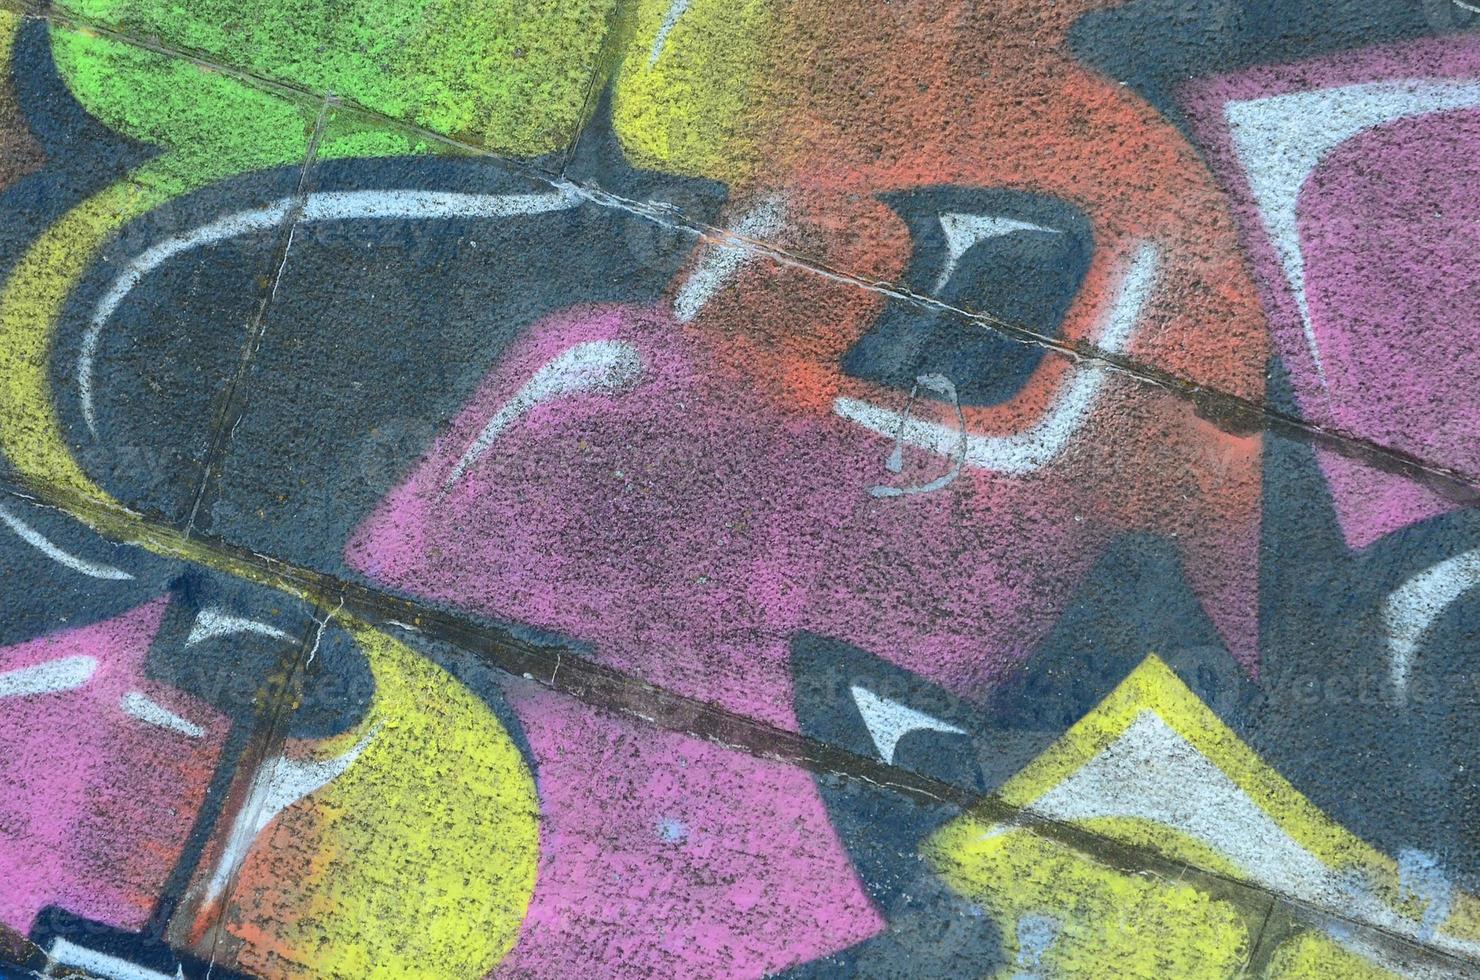 fragmento de dibujos de graffiti. la antigua muralla decorada con manchas de pintura al estilo de la cultura del arte callejero. textura de fondo multicolor foto